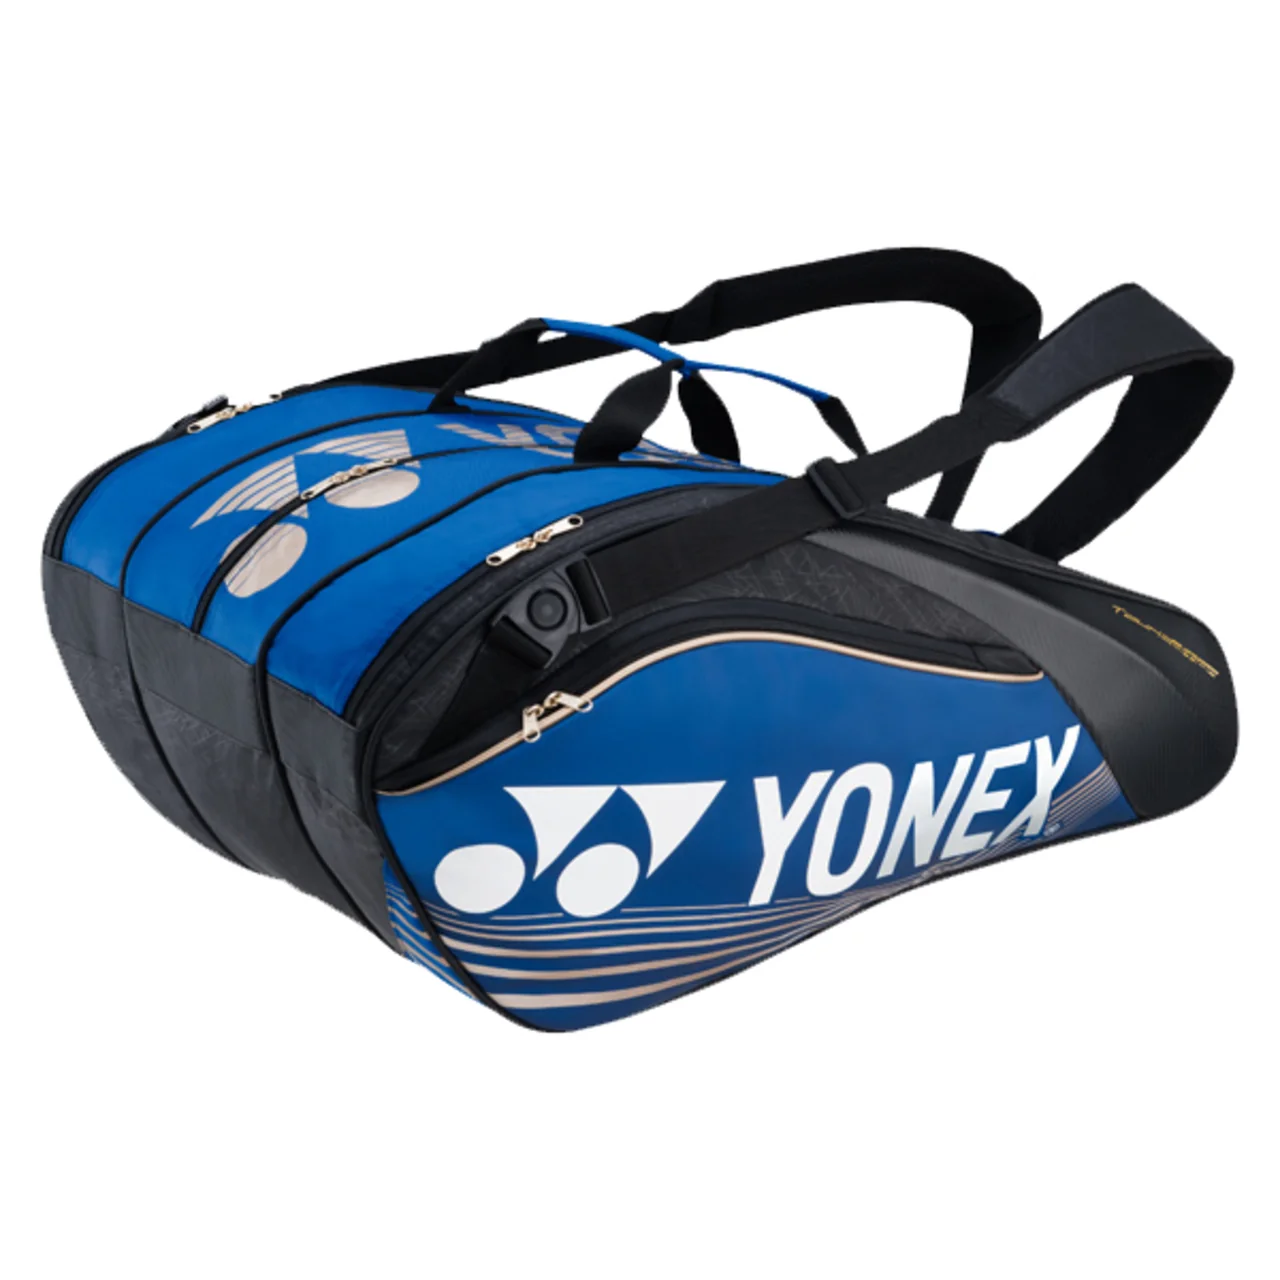 Yonex Pro Bag x12 Blue